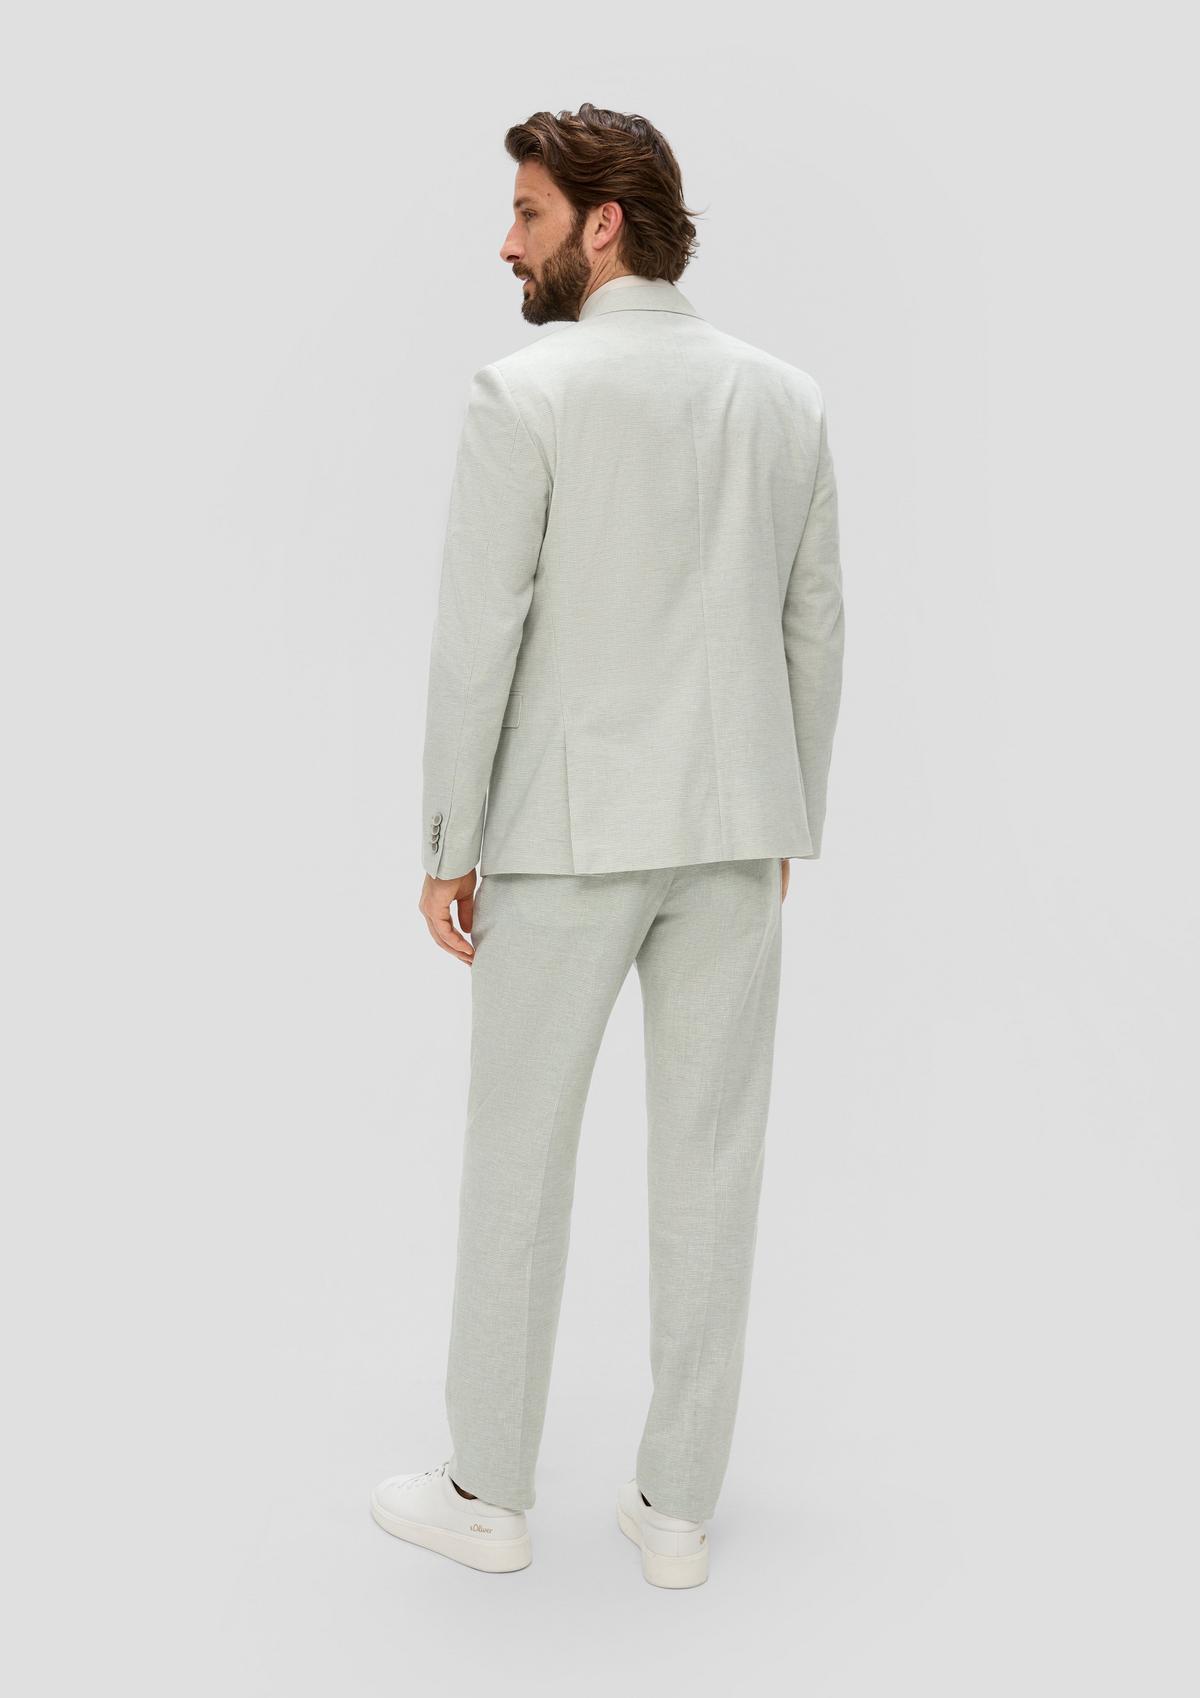 s.Oliver Slim fit: Houndstooth pattern jacket